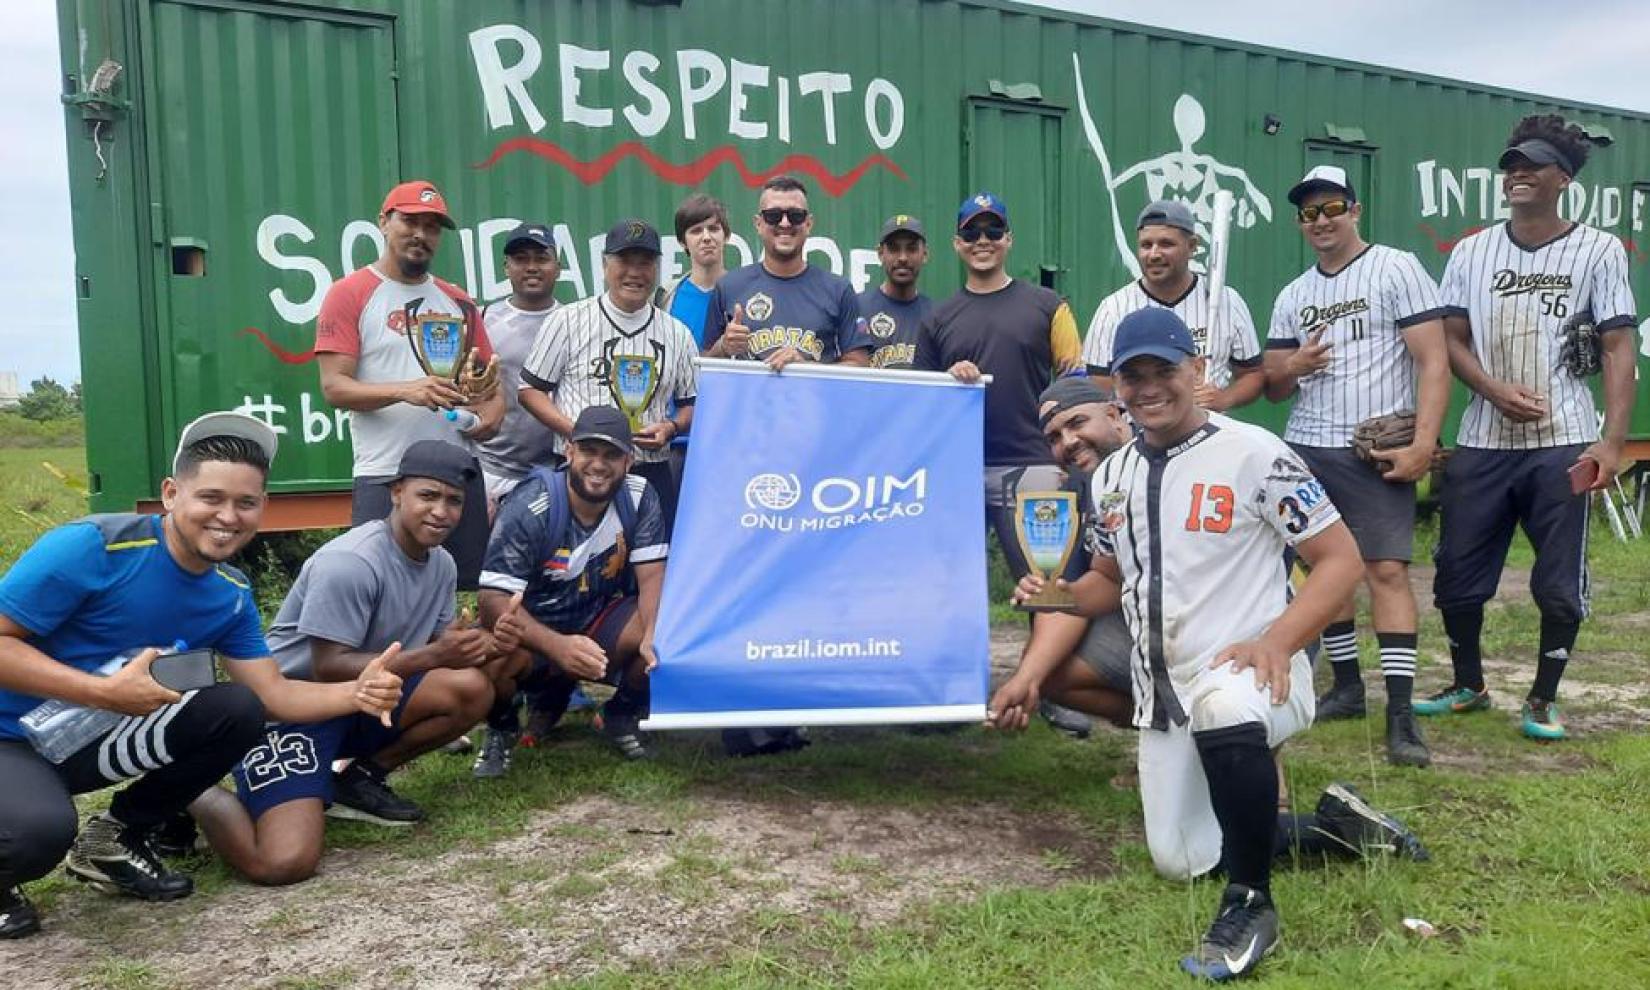 Torneio de Softbol promove integração entre comunidade local e venezuelanos em Santa Catarina